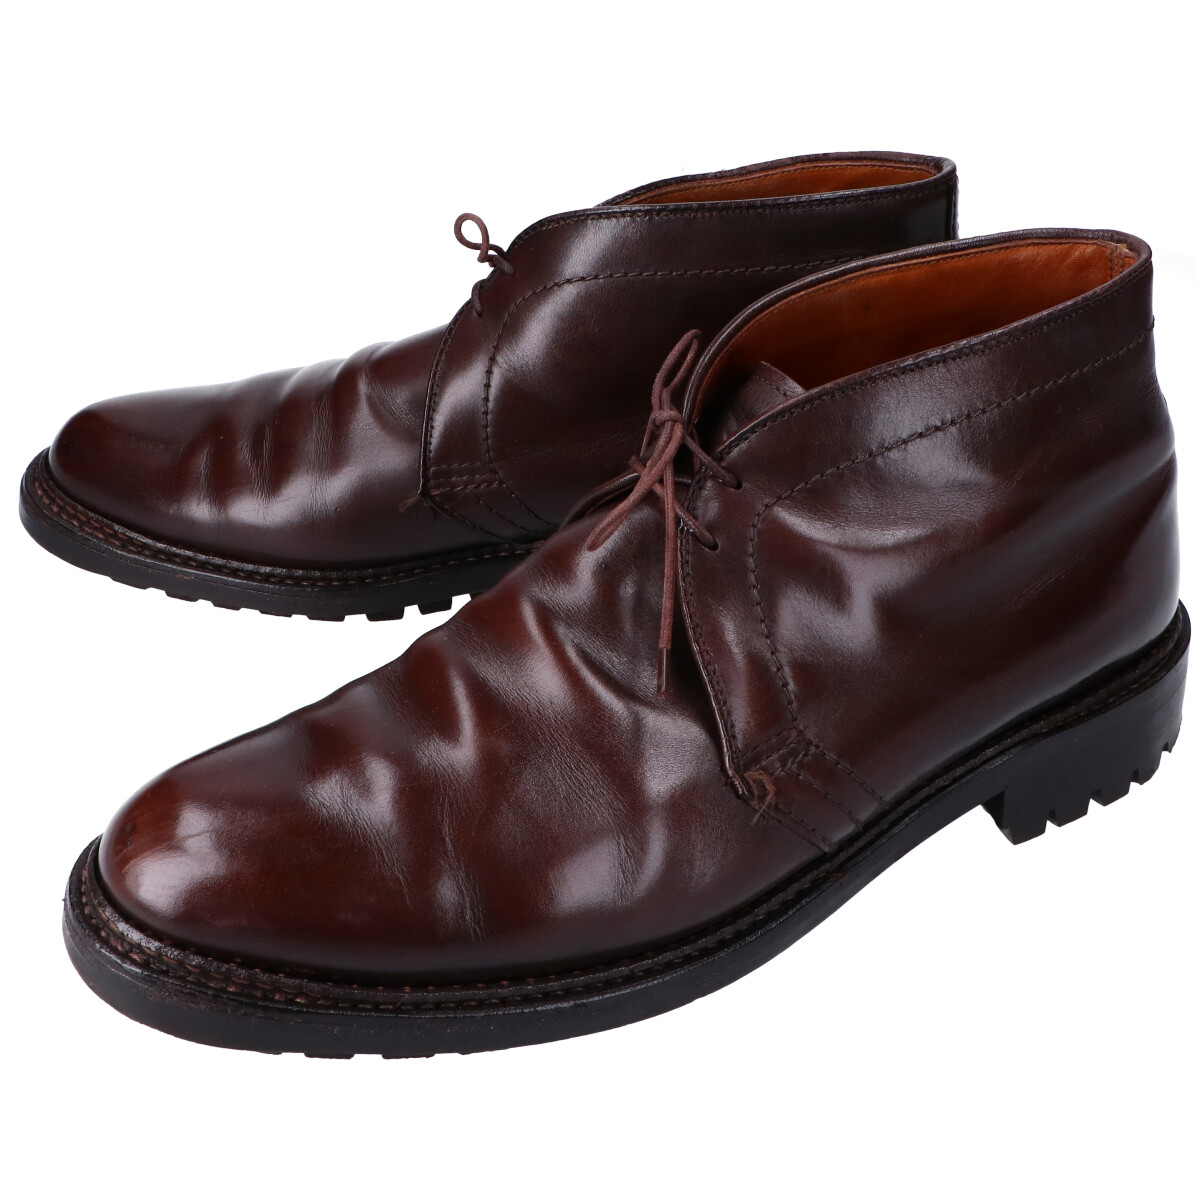 オールデンの靴のブラウン 1327C カーフ コマンドソール バリーラスト 2アイレットチャッカブーツの買取価格・実績 2021年8月1日公開